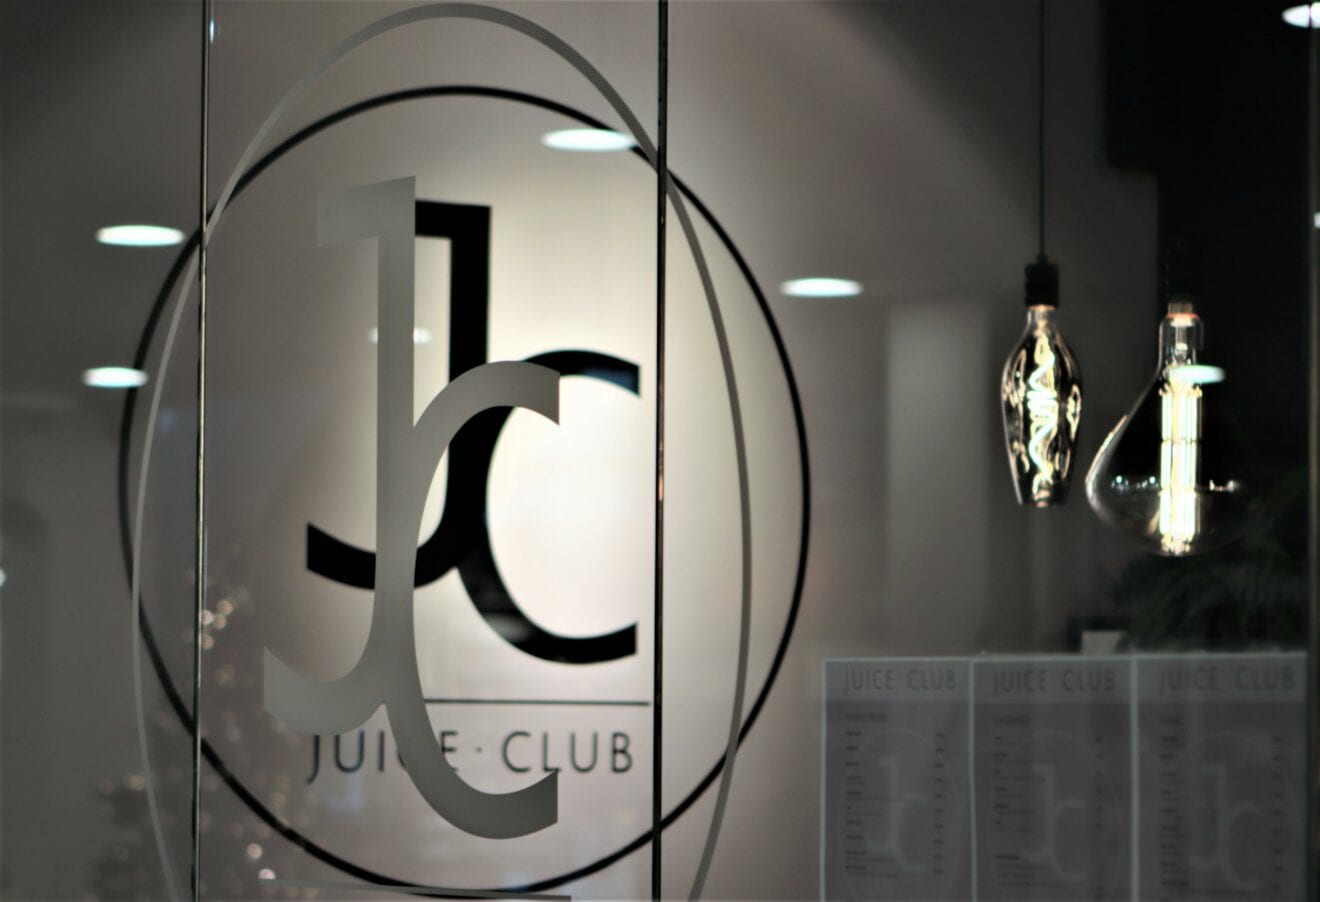 JuiceClub søger medarbejdere